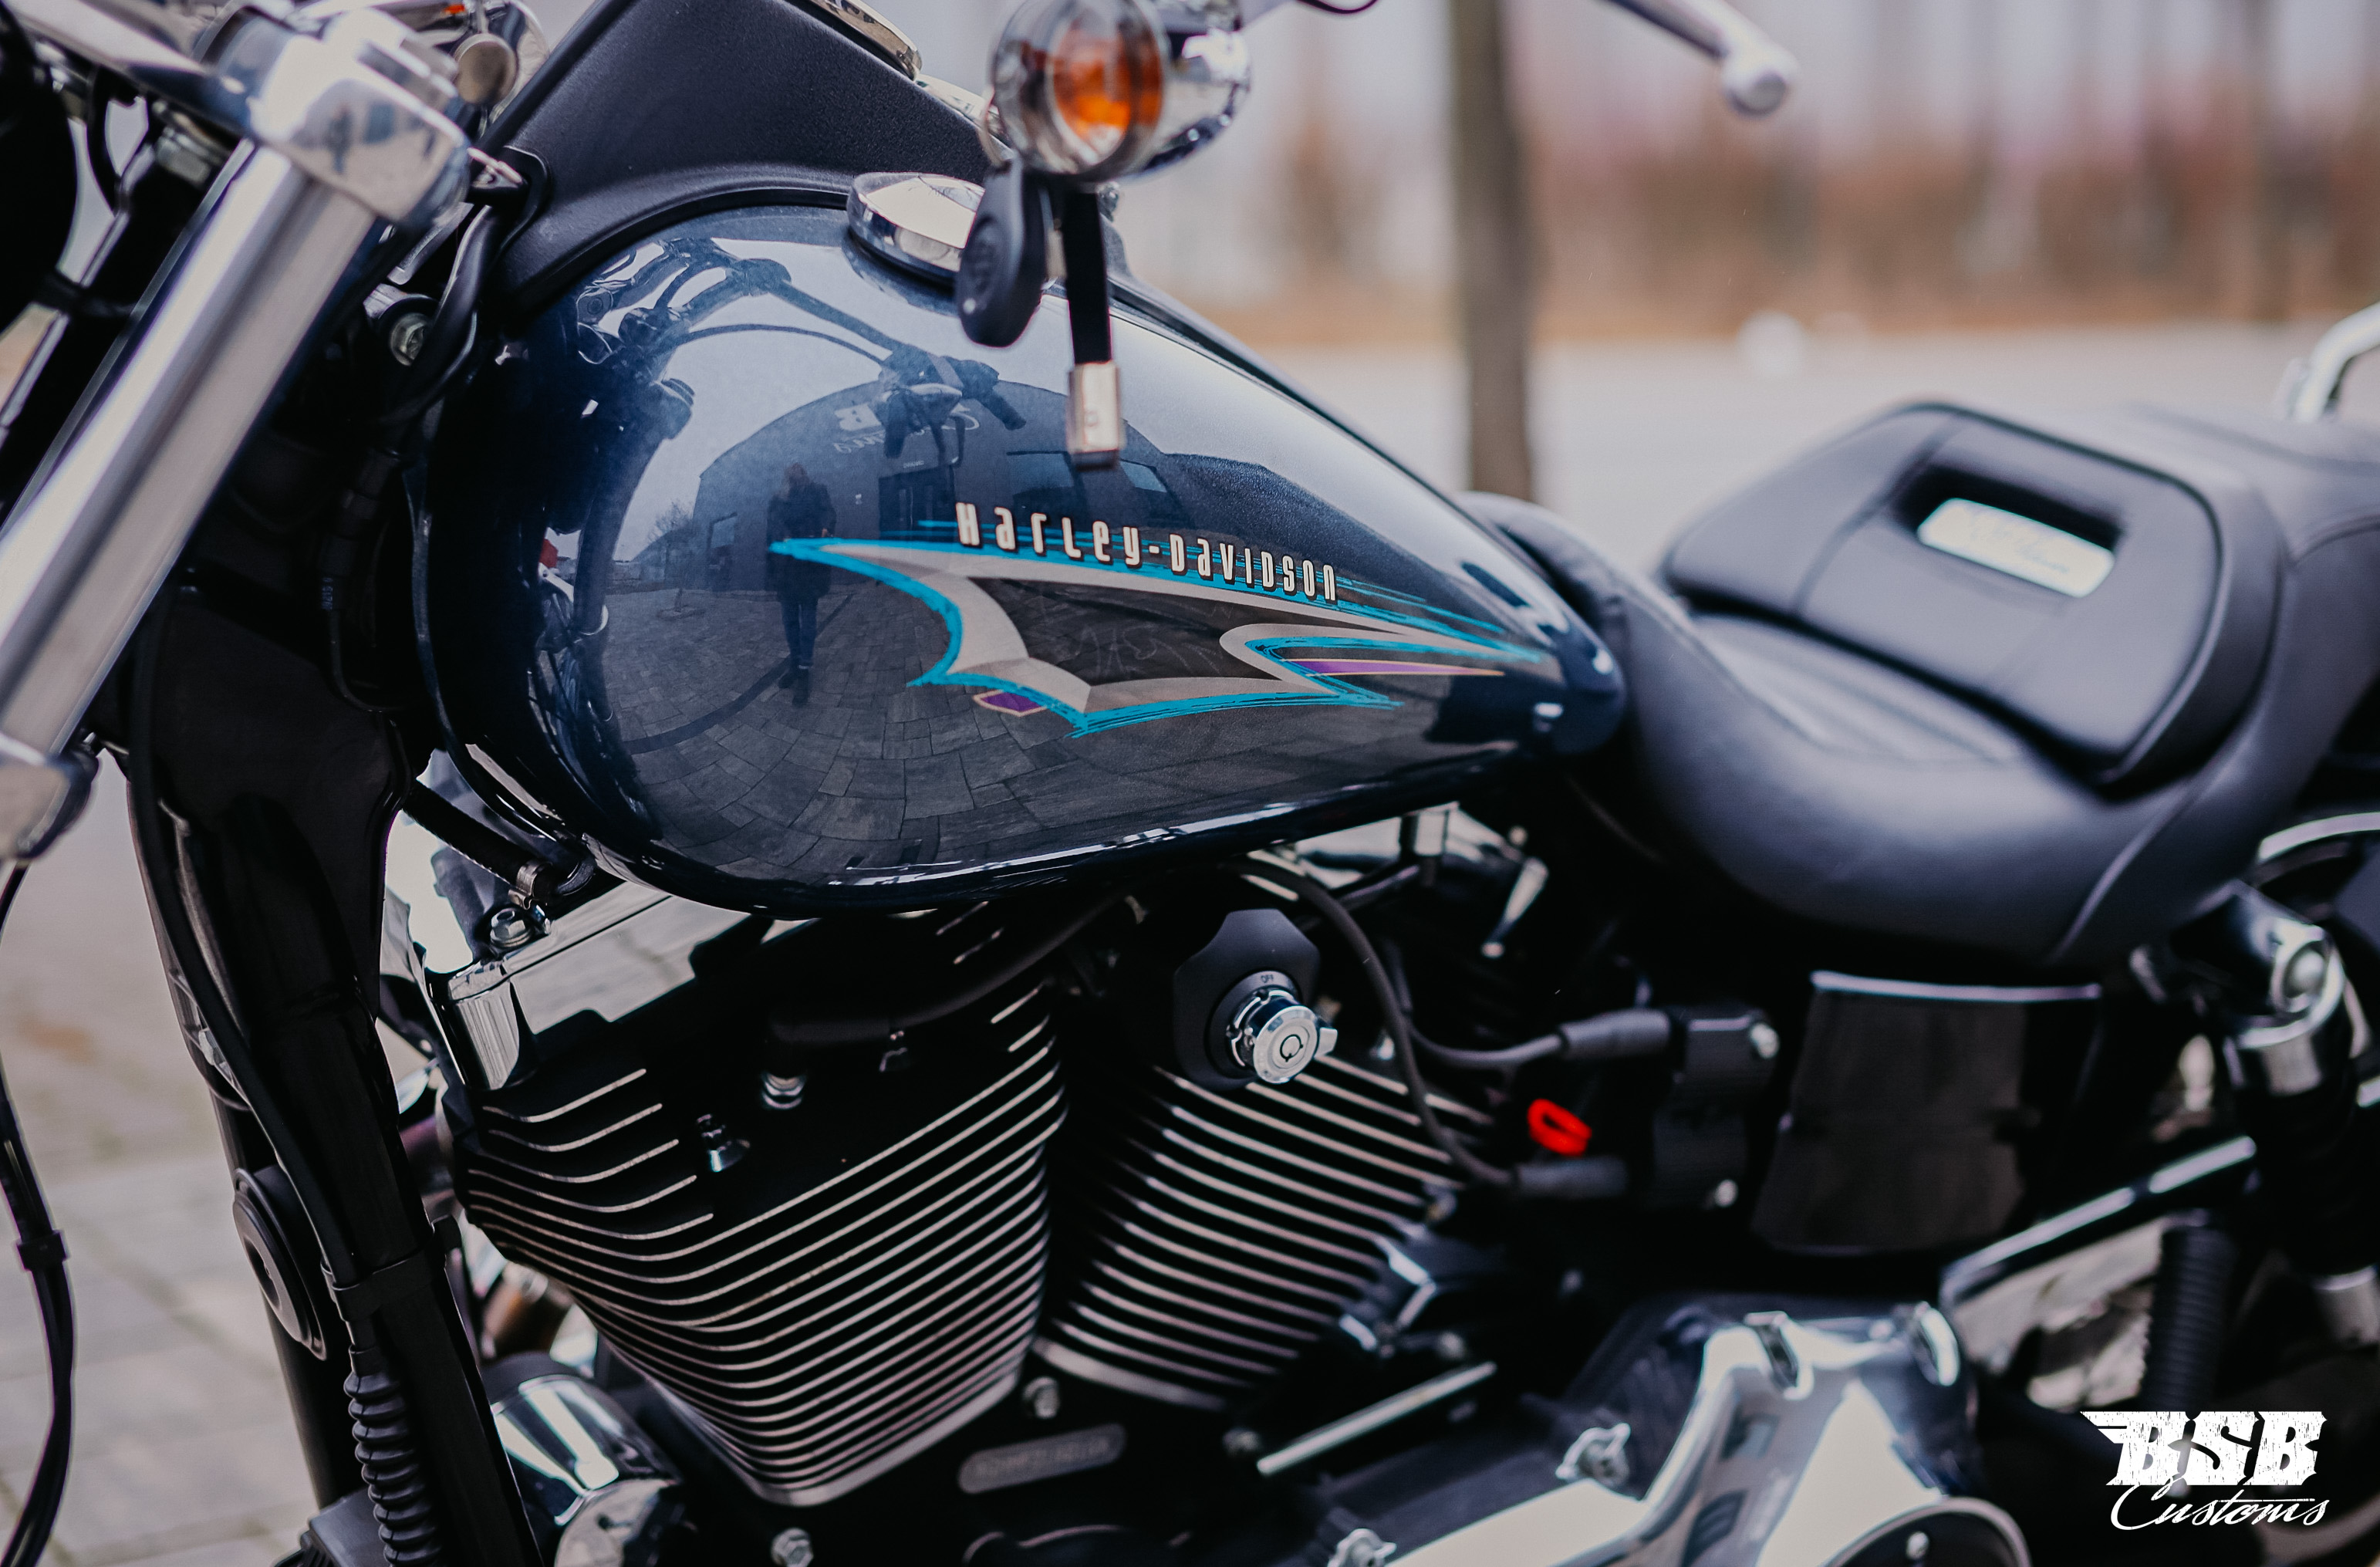 2015 Harley Davidson FXDL Low Rider 103 ABS 1690ccm bereits ab 158 EUR finanzieren*